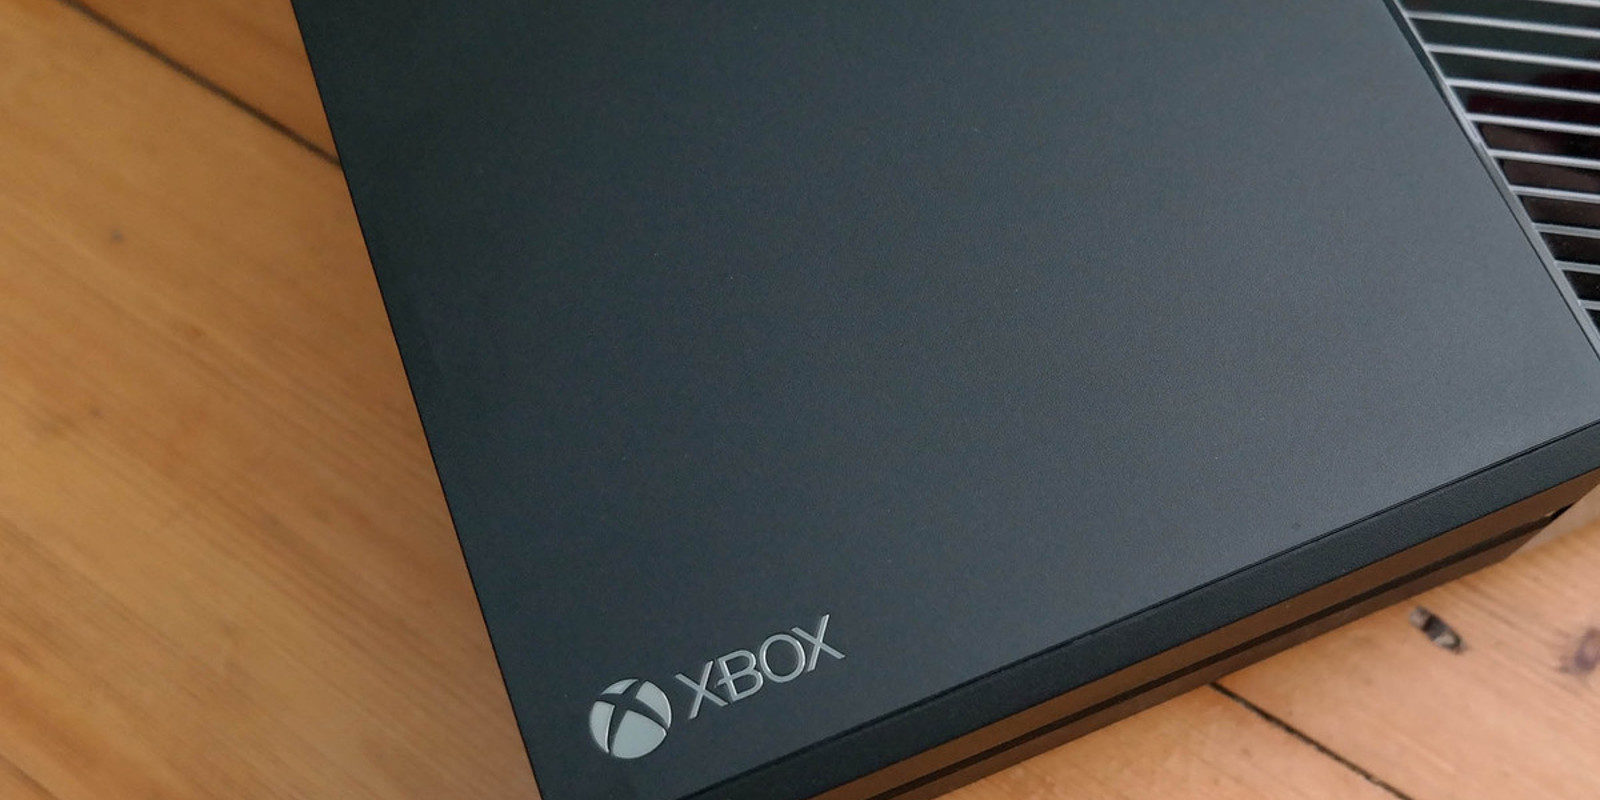 5 ofertas para comprar una Xbox One por menos de 300 euros hoy mismo